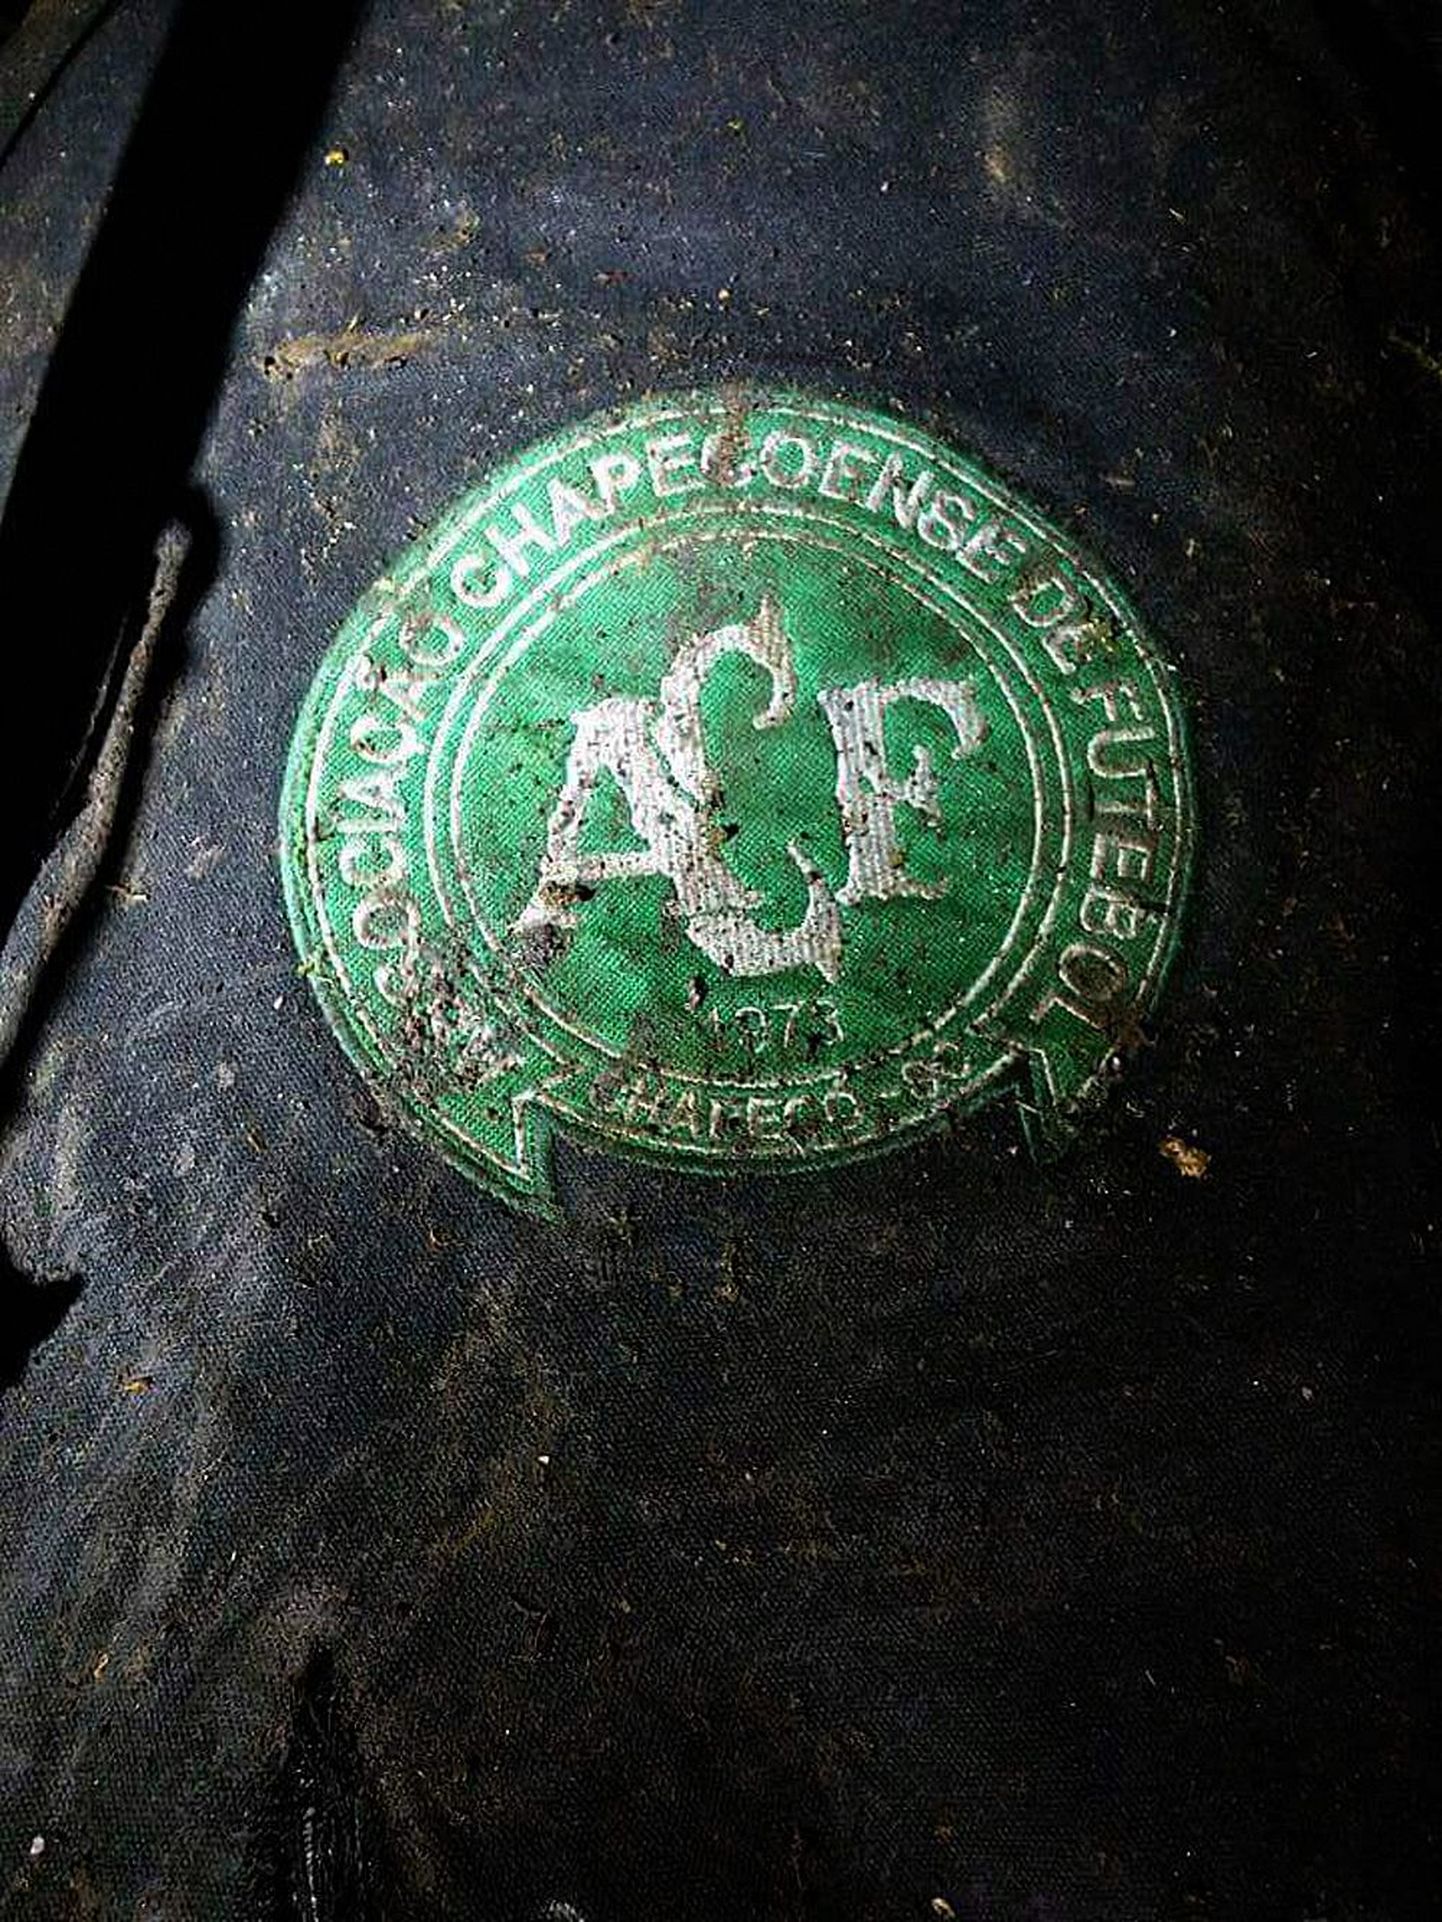 Эмблема футбольного клуба "Шапикоэнсе".